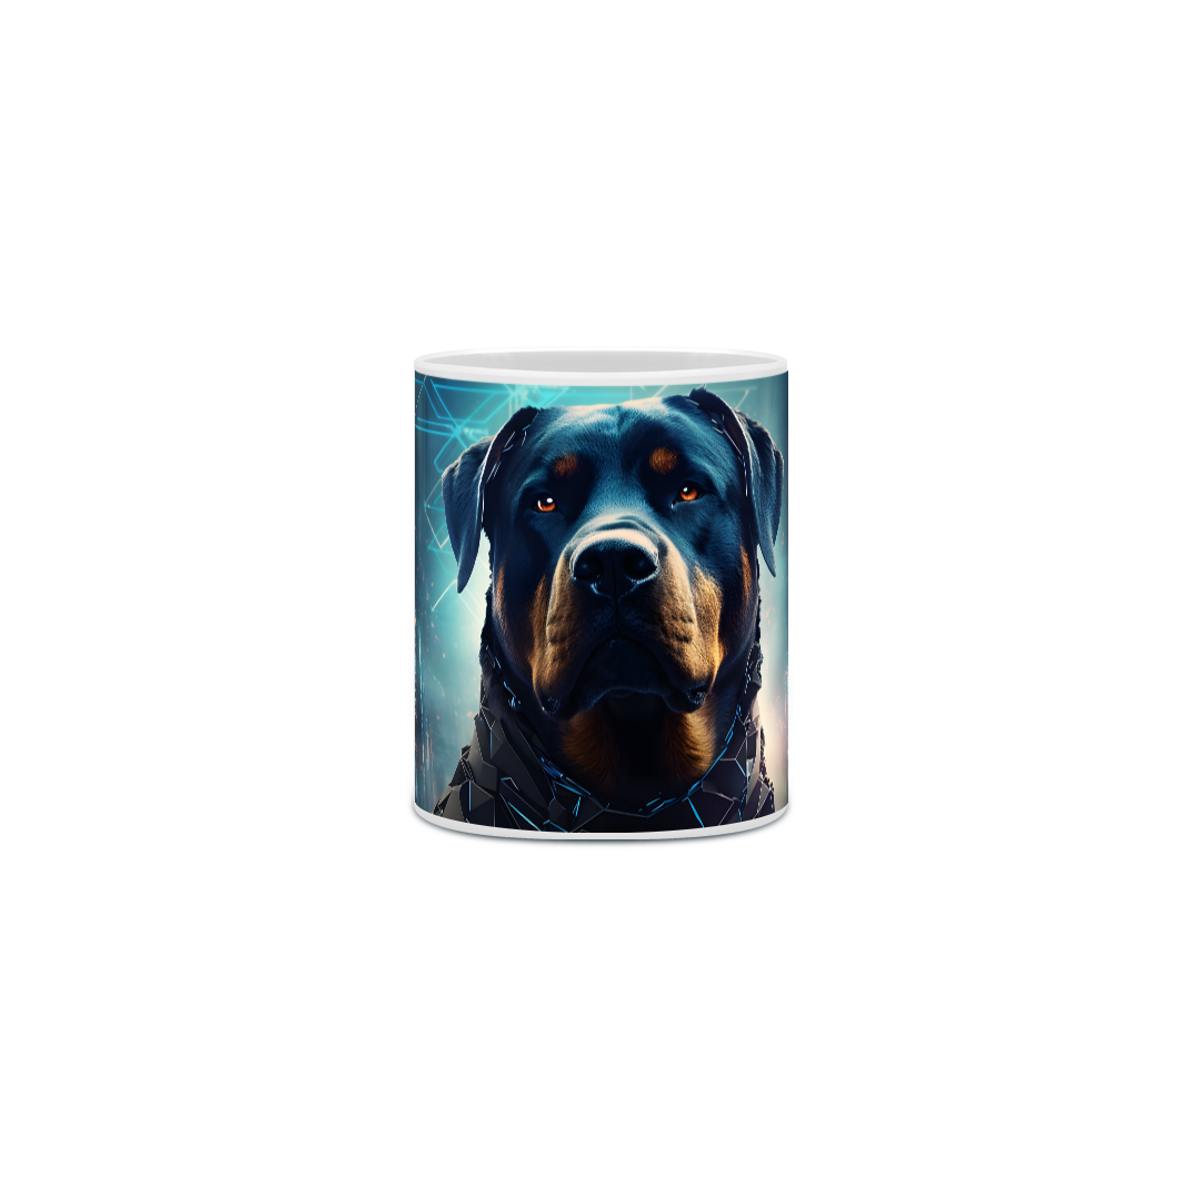 Nome do produto: Caneca Rottweiler com Arte Digital - #Autenticidade 0024